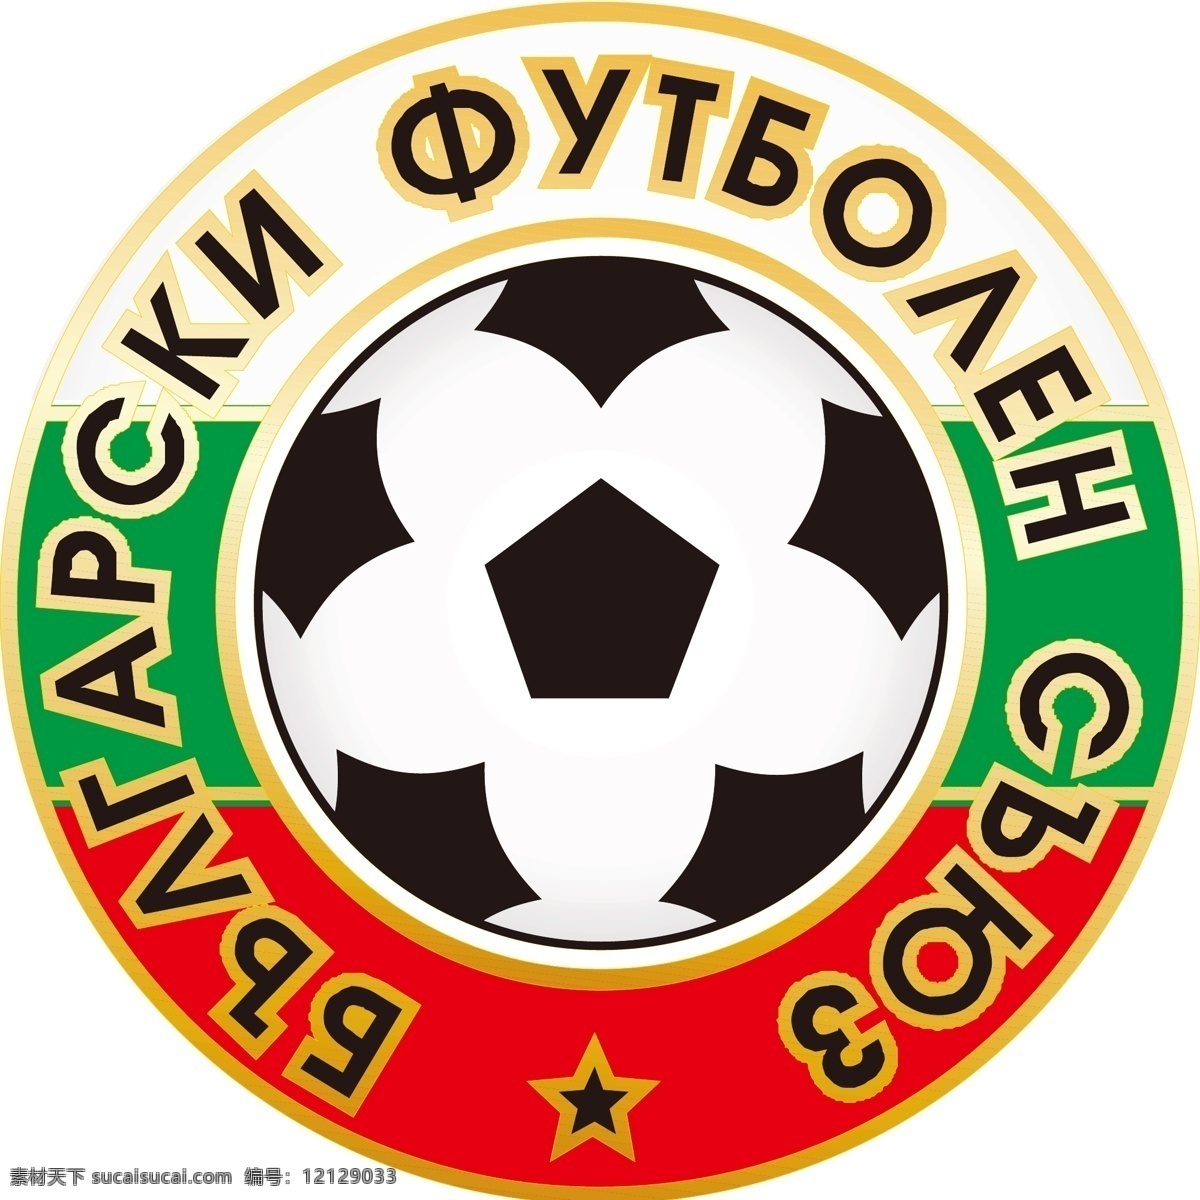 保加利亚 国家队 队徽 logo 欧洲 东南部 巴尔干半岛 标志 标识 运动会徽 标志图标 公共标识标志